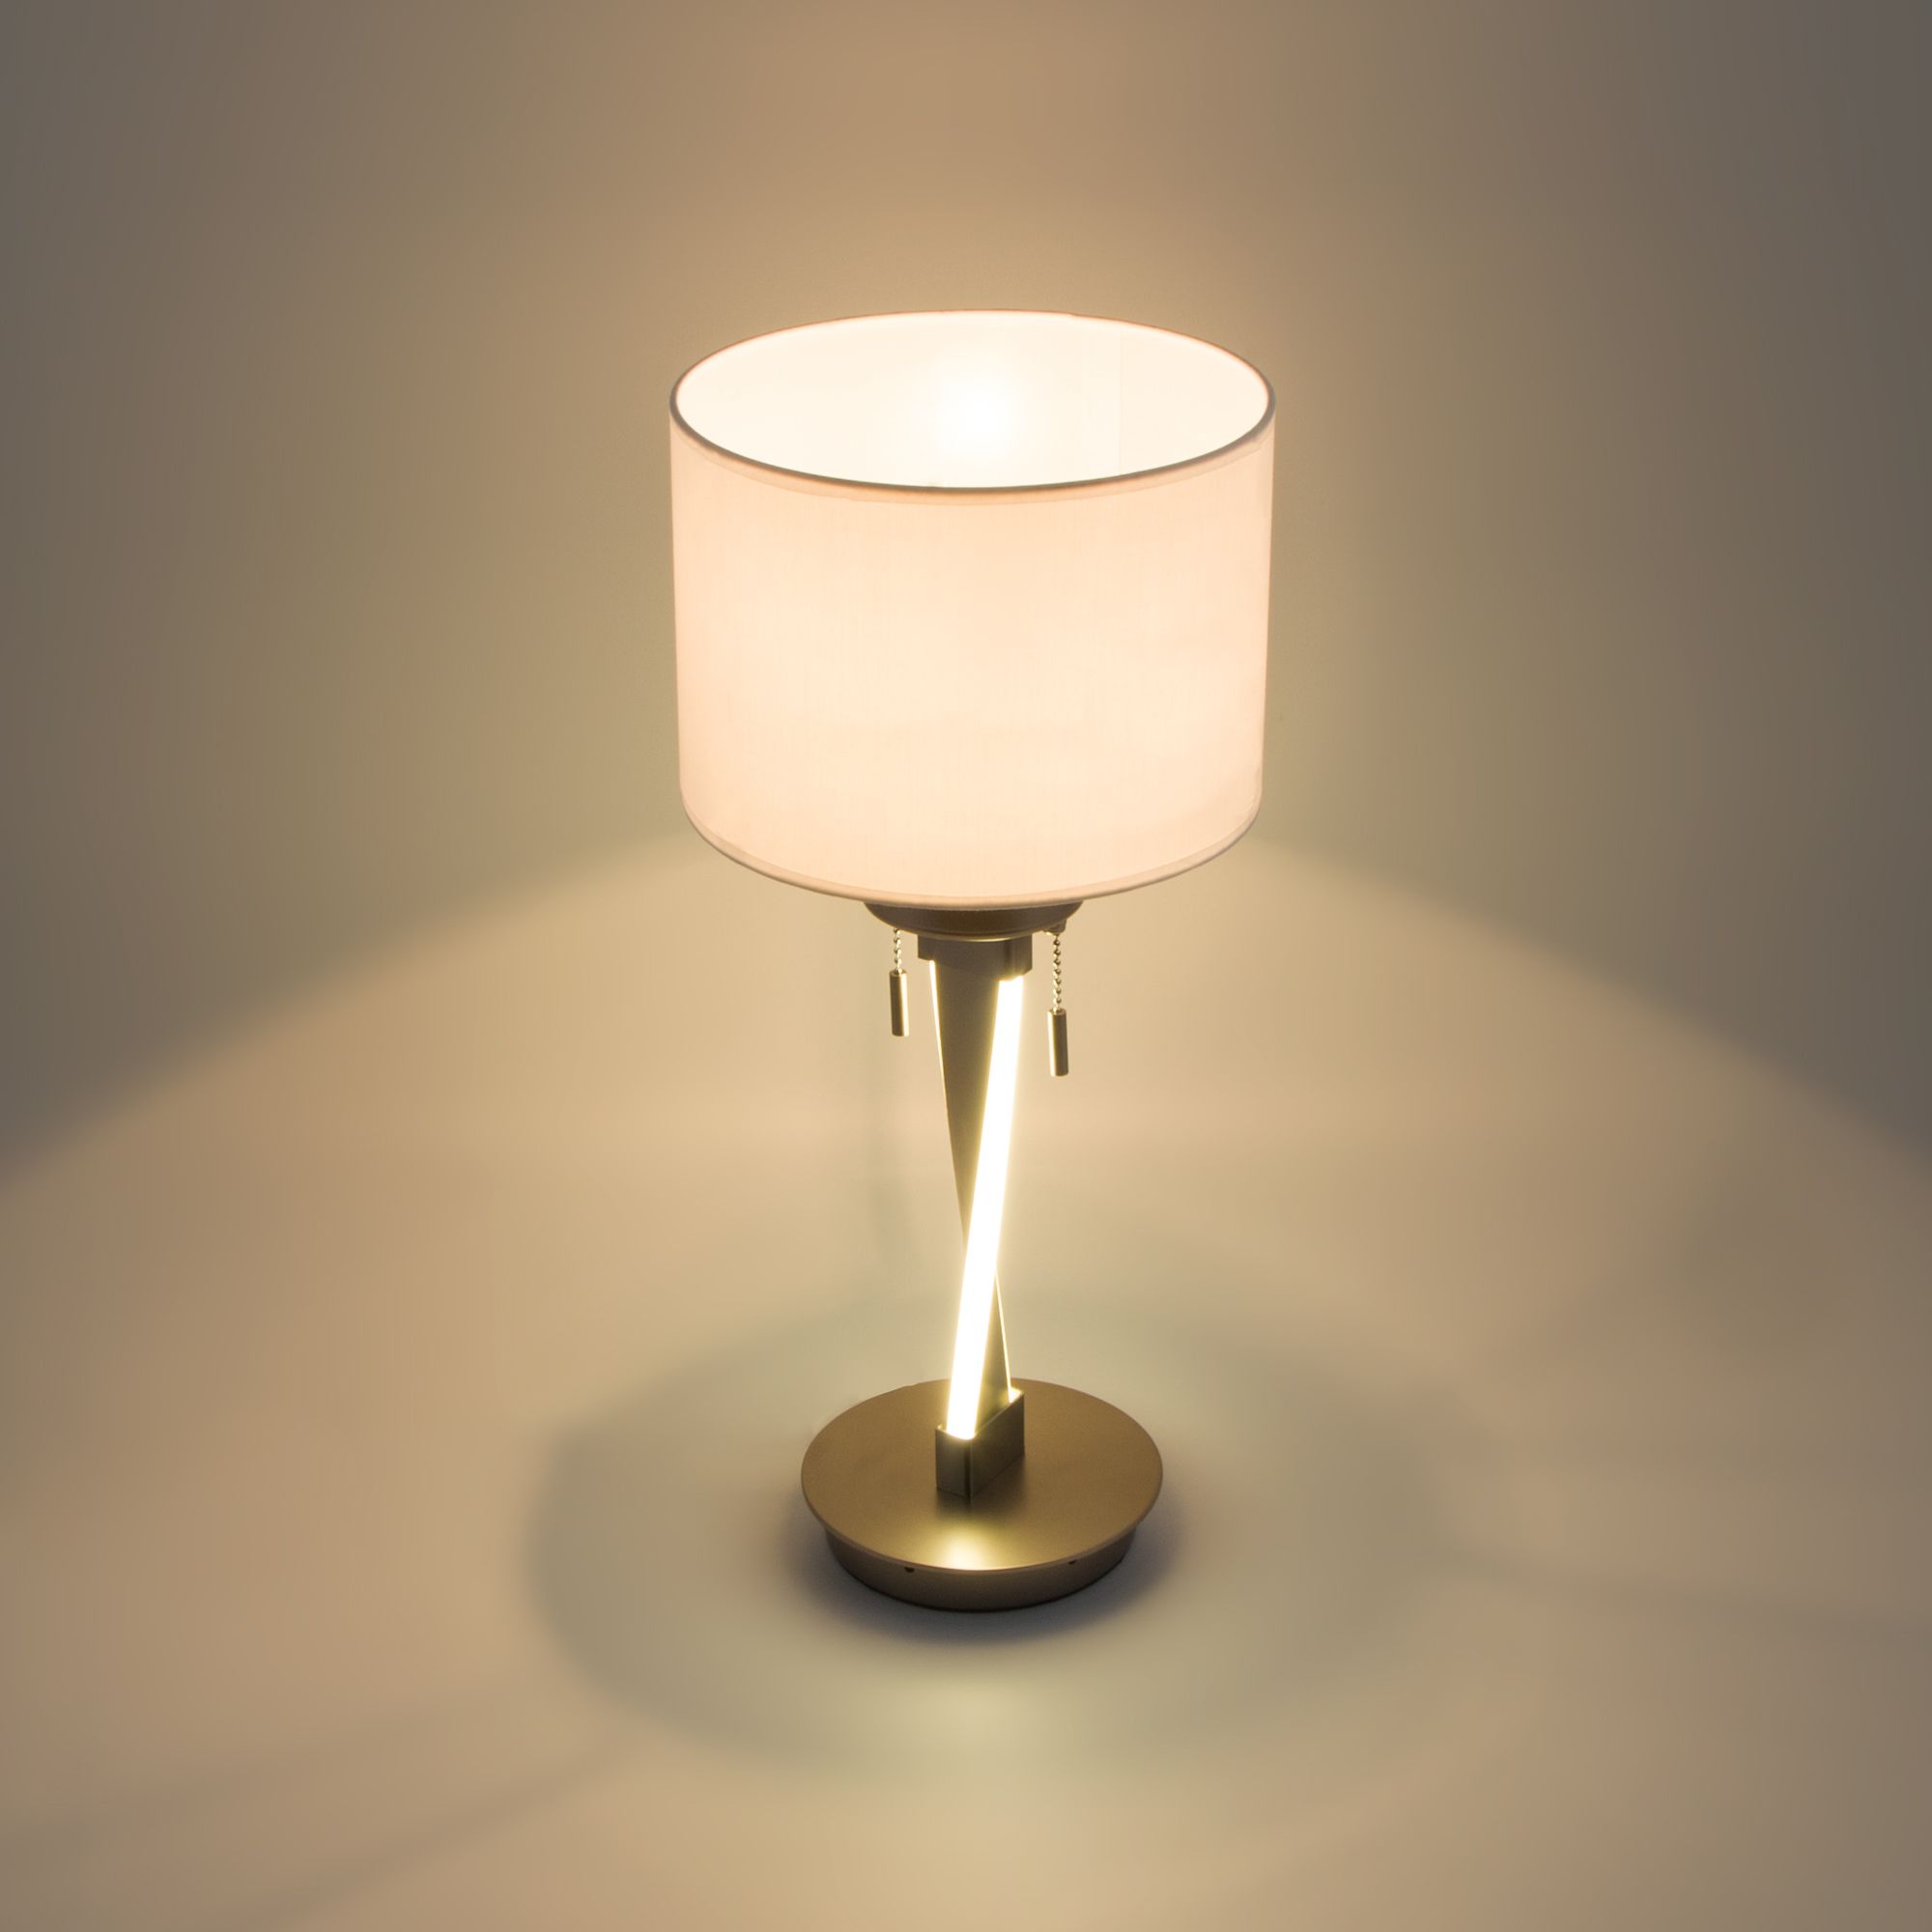 Настольный светодиодный светильник с тканевым абажуром Bogate's Titan 993 белый / никель. Фото 2